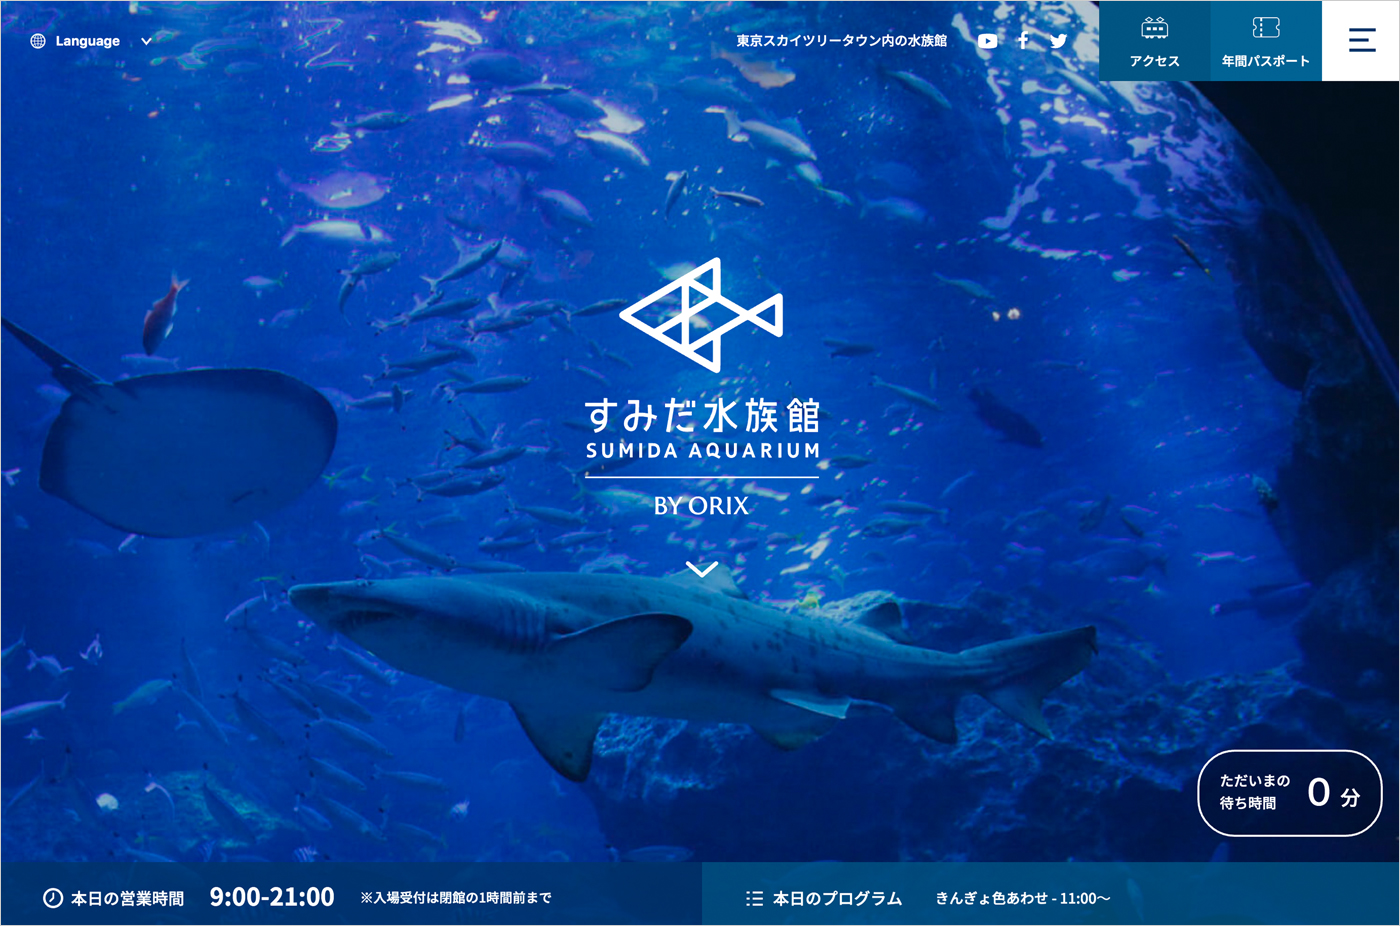 東京スカイツリータウンにある「すみだ水族館」ウェブサイトの画面キャプチャ画像